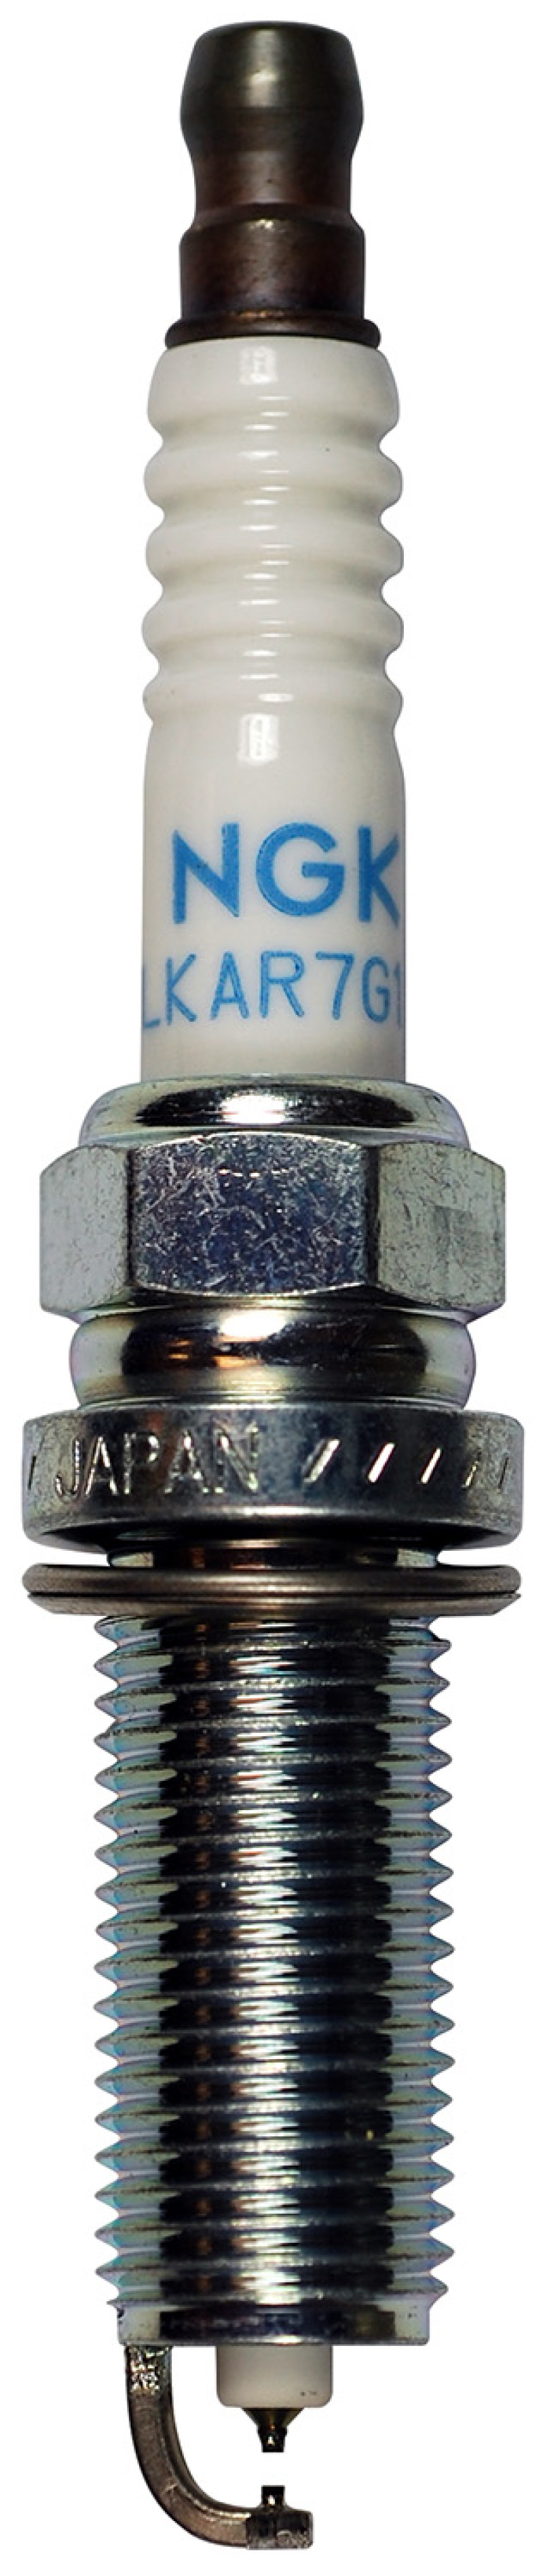 NGK Laser Iridium Spark Plug Box of 4 (DILKAR7H11GS) - 96964